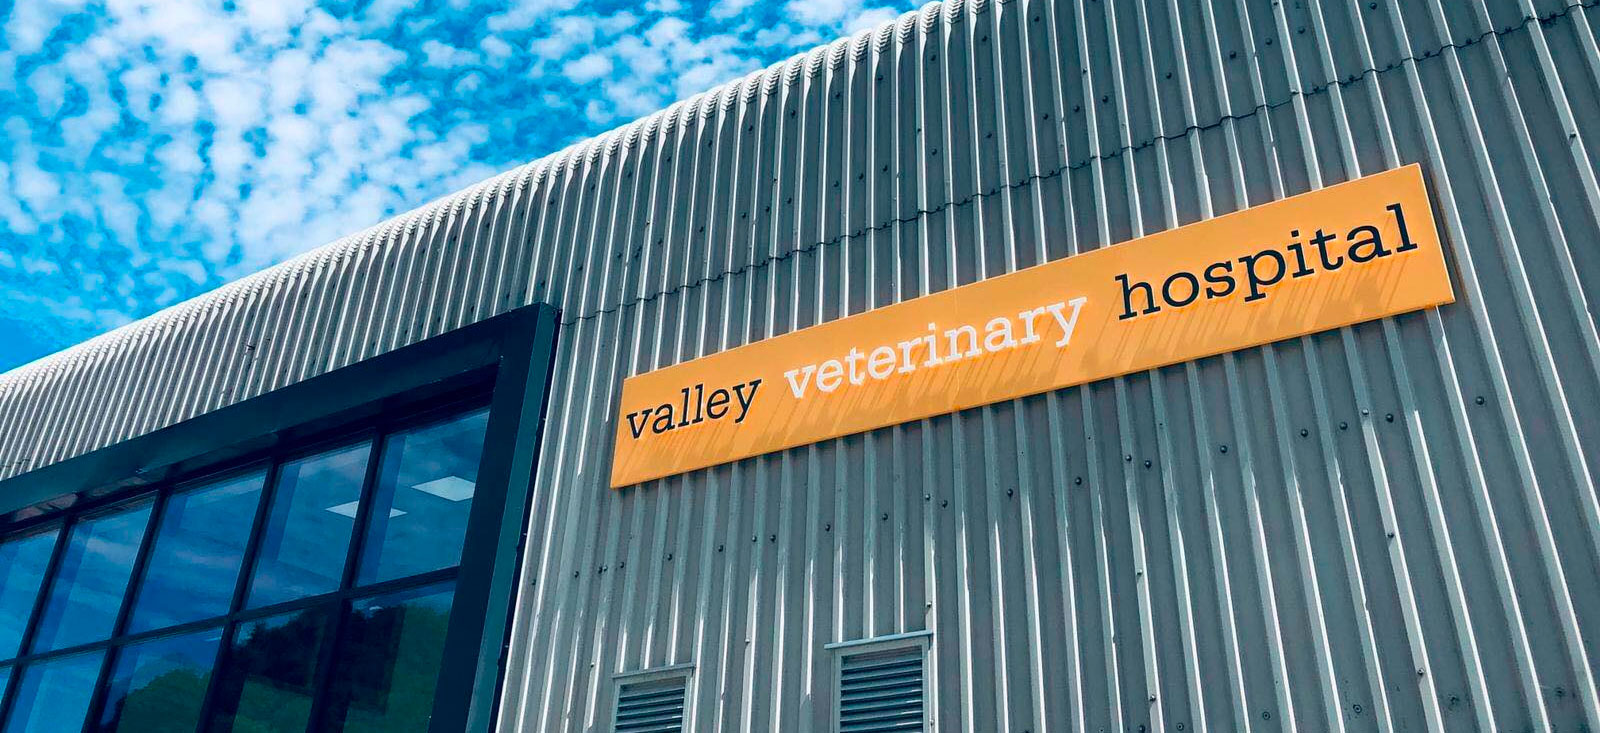 Valley Veterinary Hospital | Valley Vets Ltd